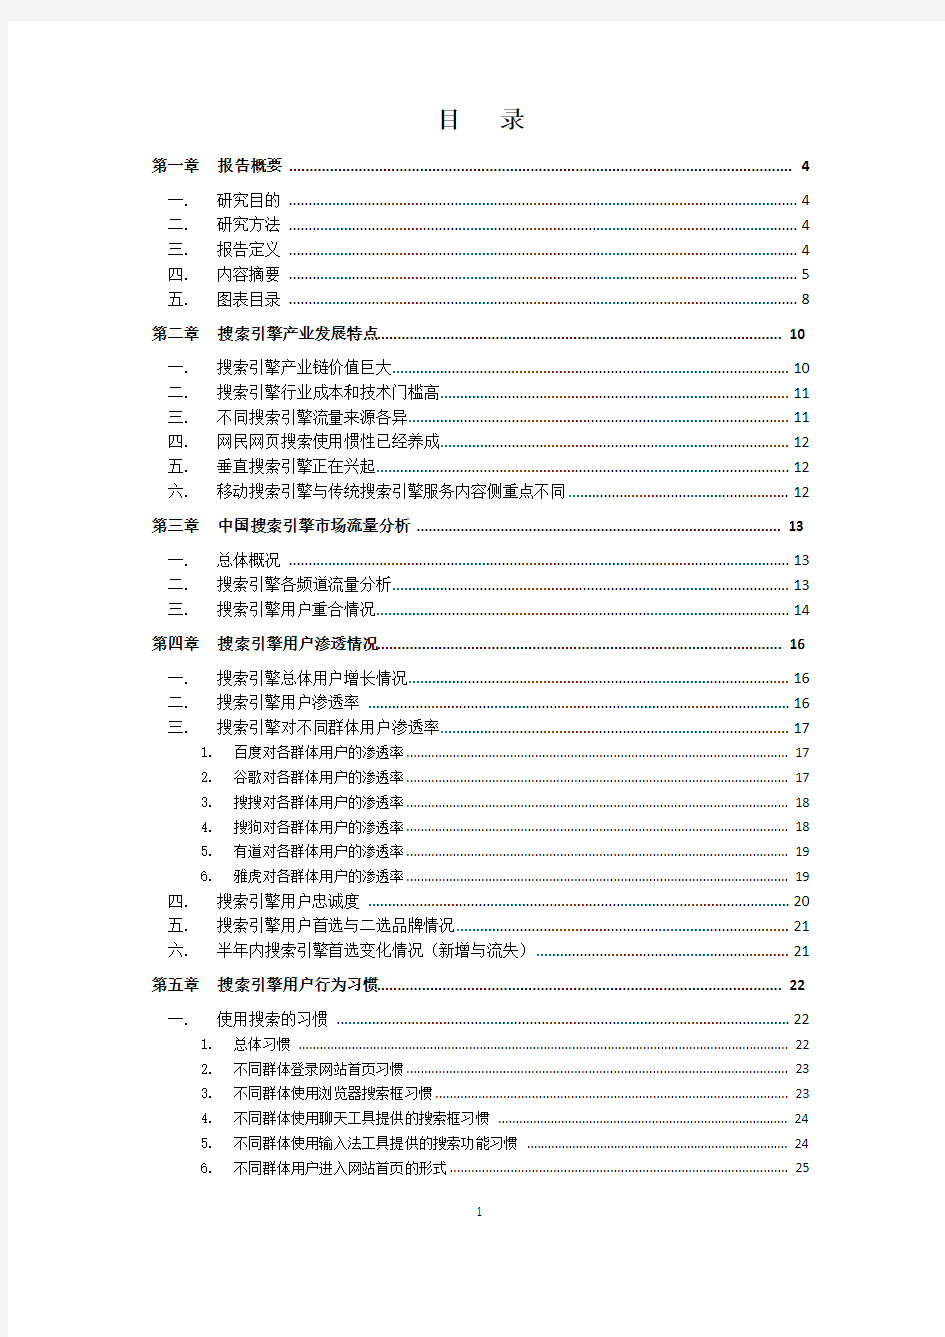 2011年中国搜索引擎市场研究报告